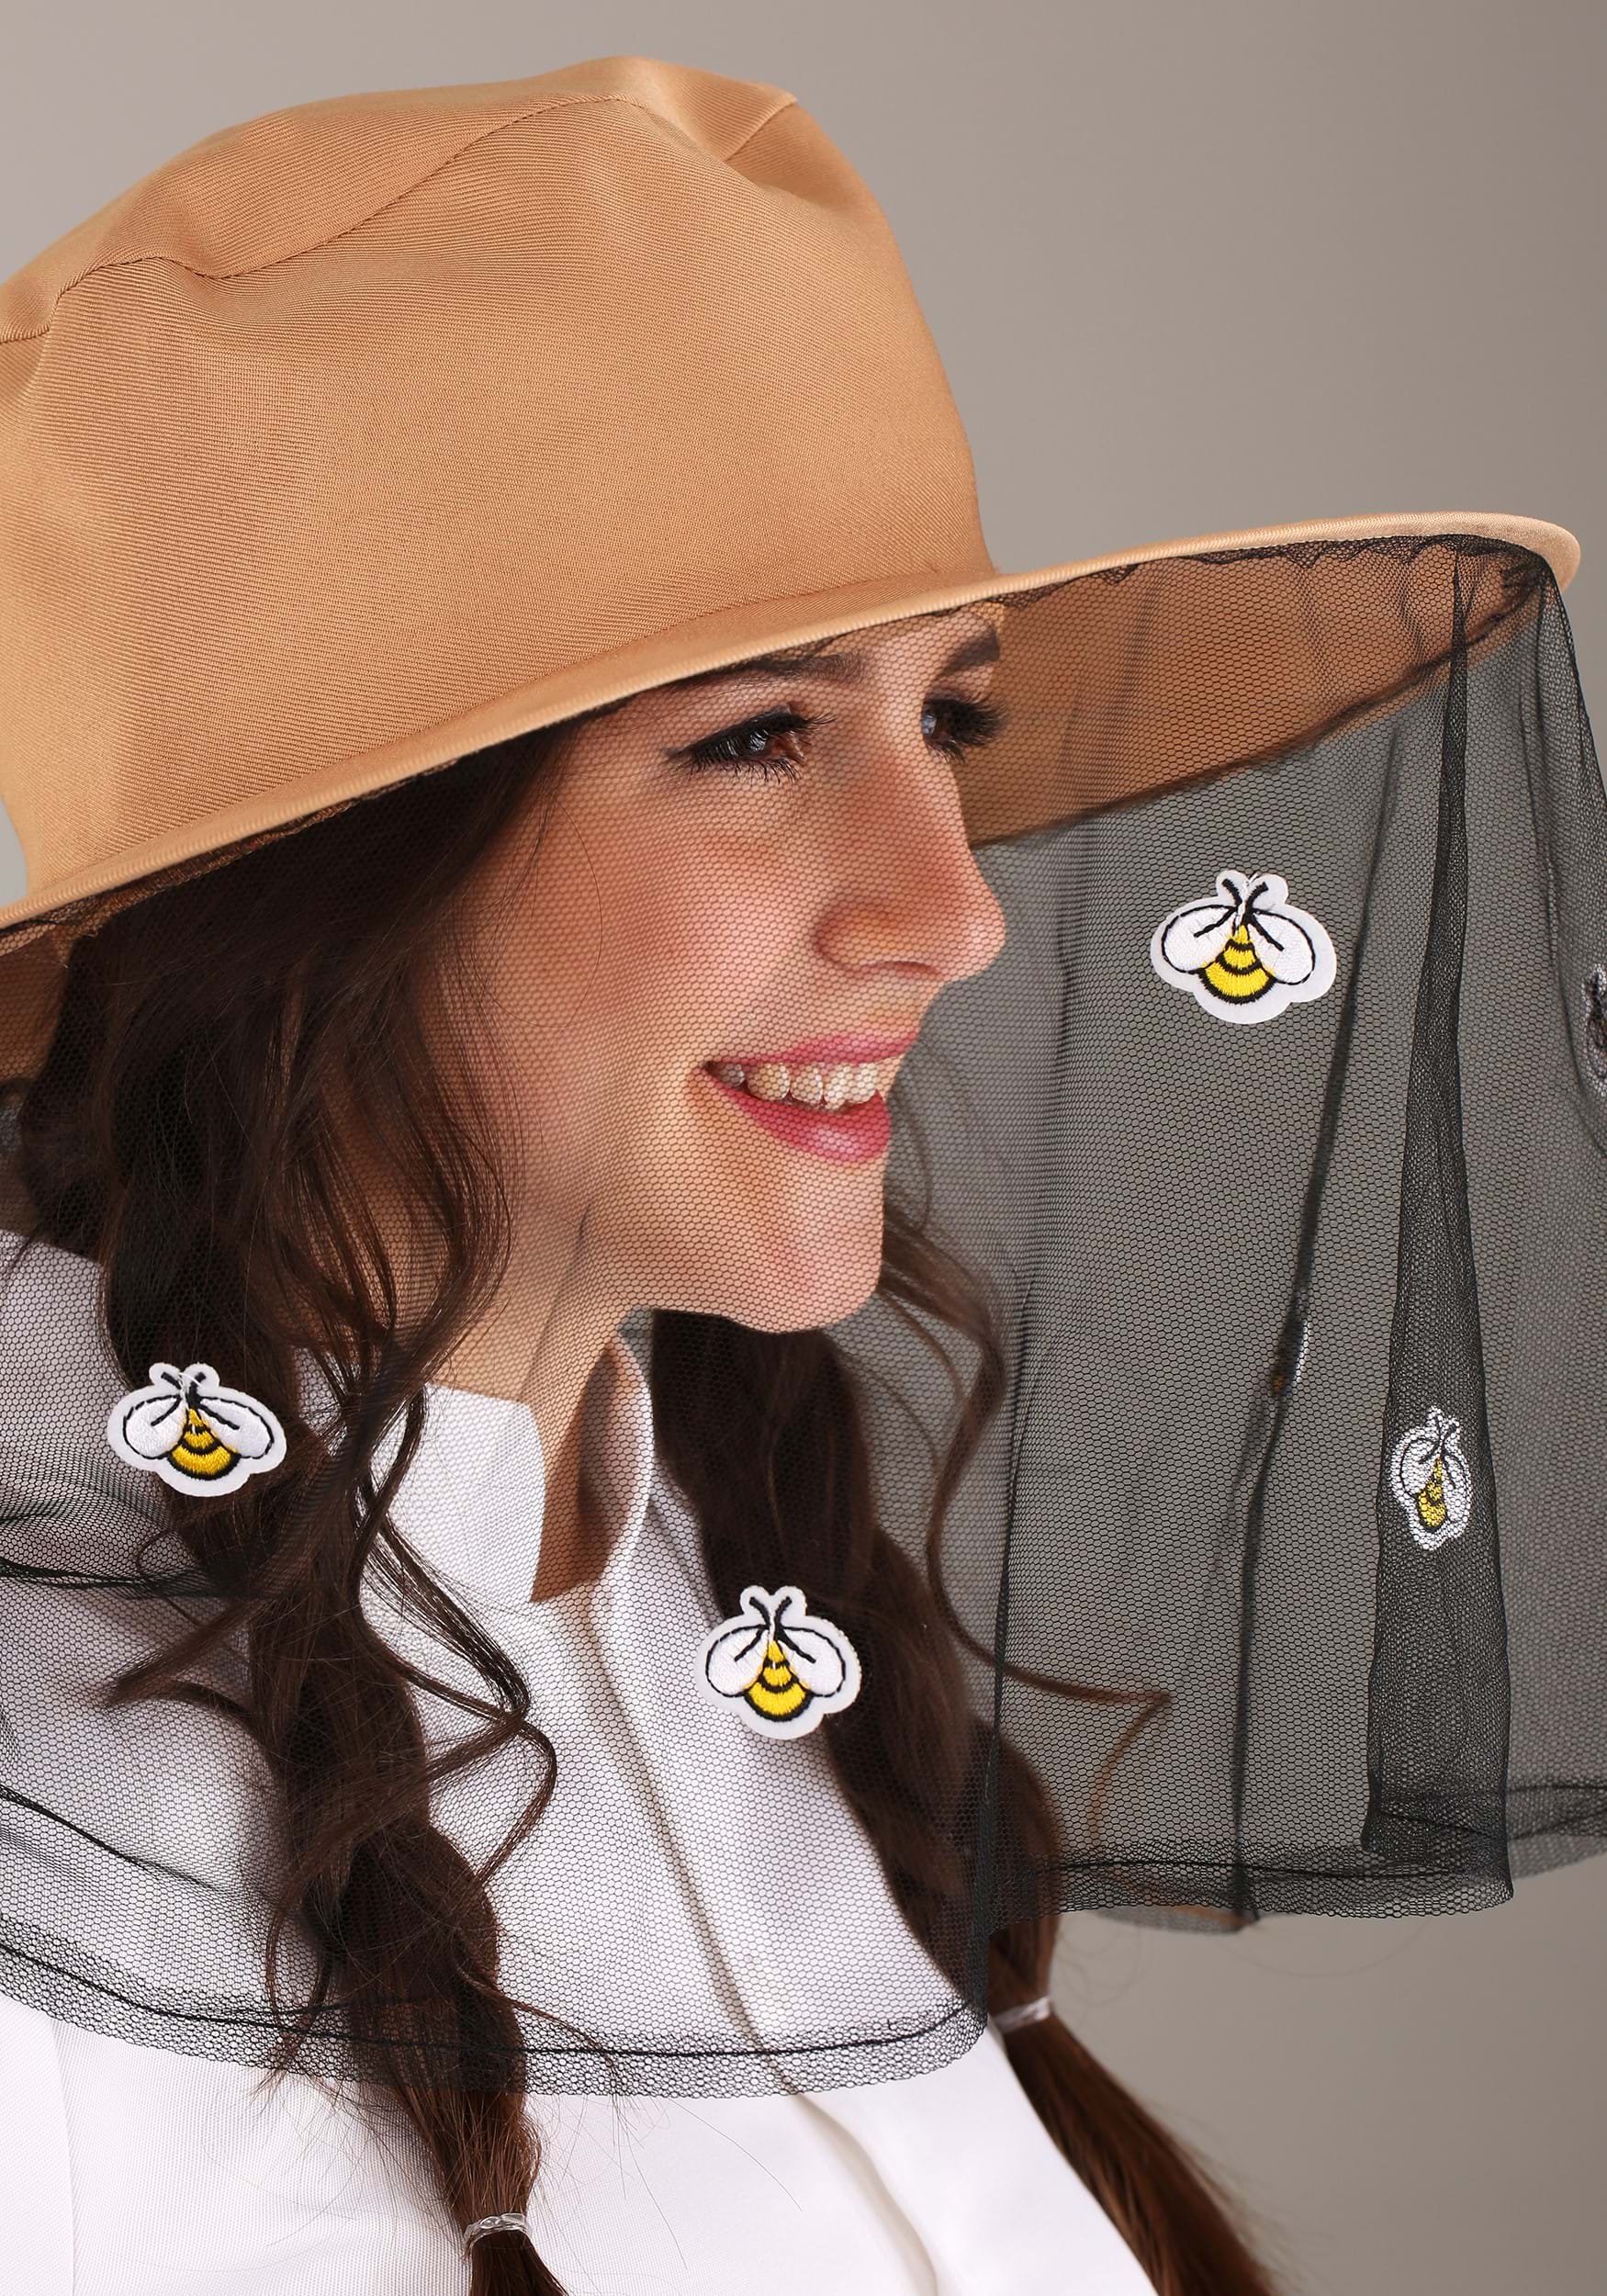 Busy Beekeeper Fancy Dress Costume For Women